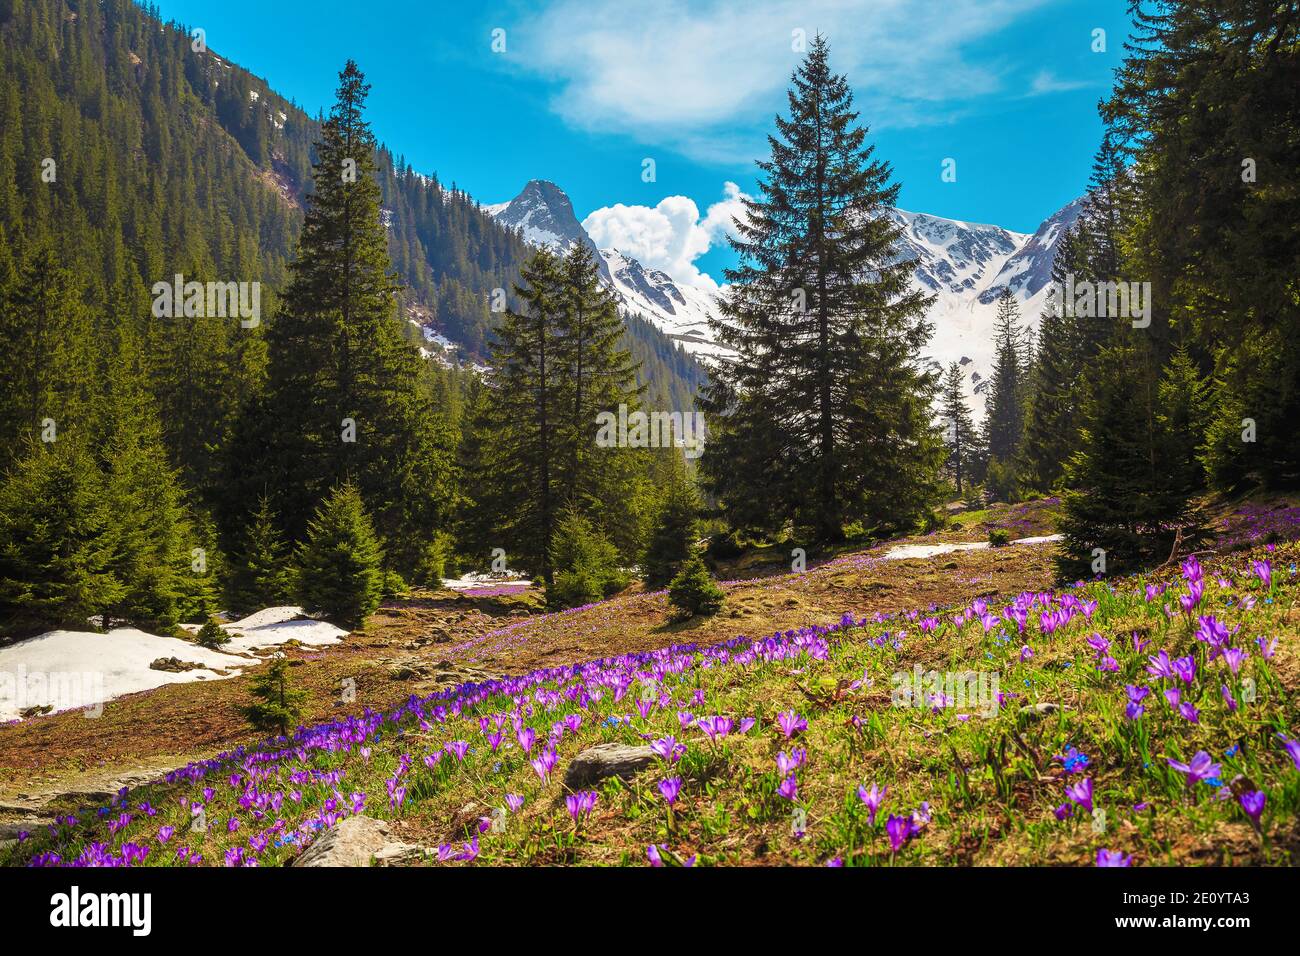 Maestoso paesaggio alpino di primavera, ammirabile fiorita foresta glade con fresco colorato fiori di crocus viola e alte montagne innevate sullo sfondo, fag Foto Stock